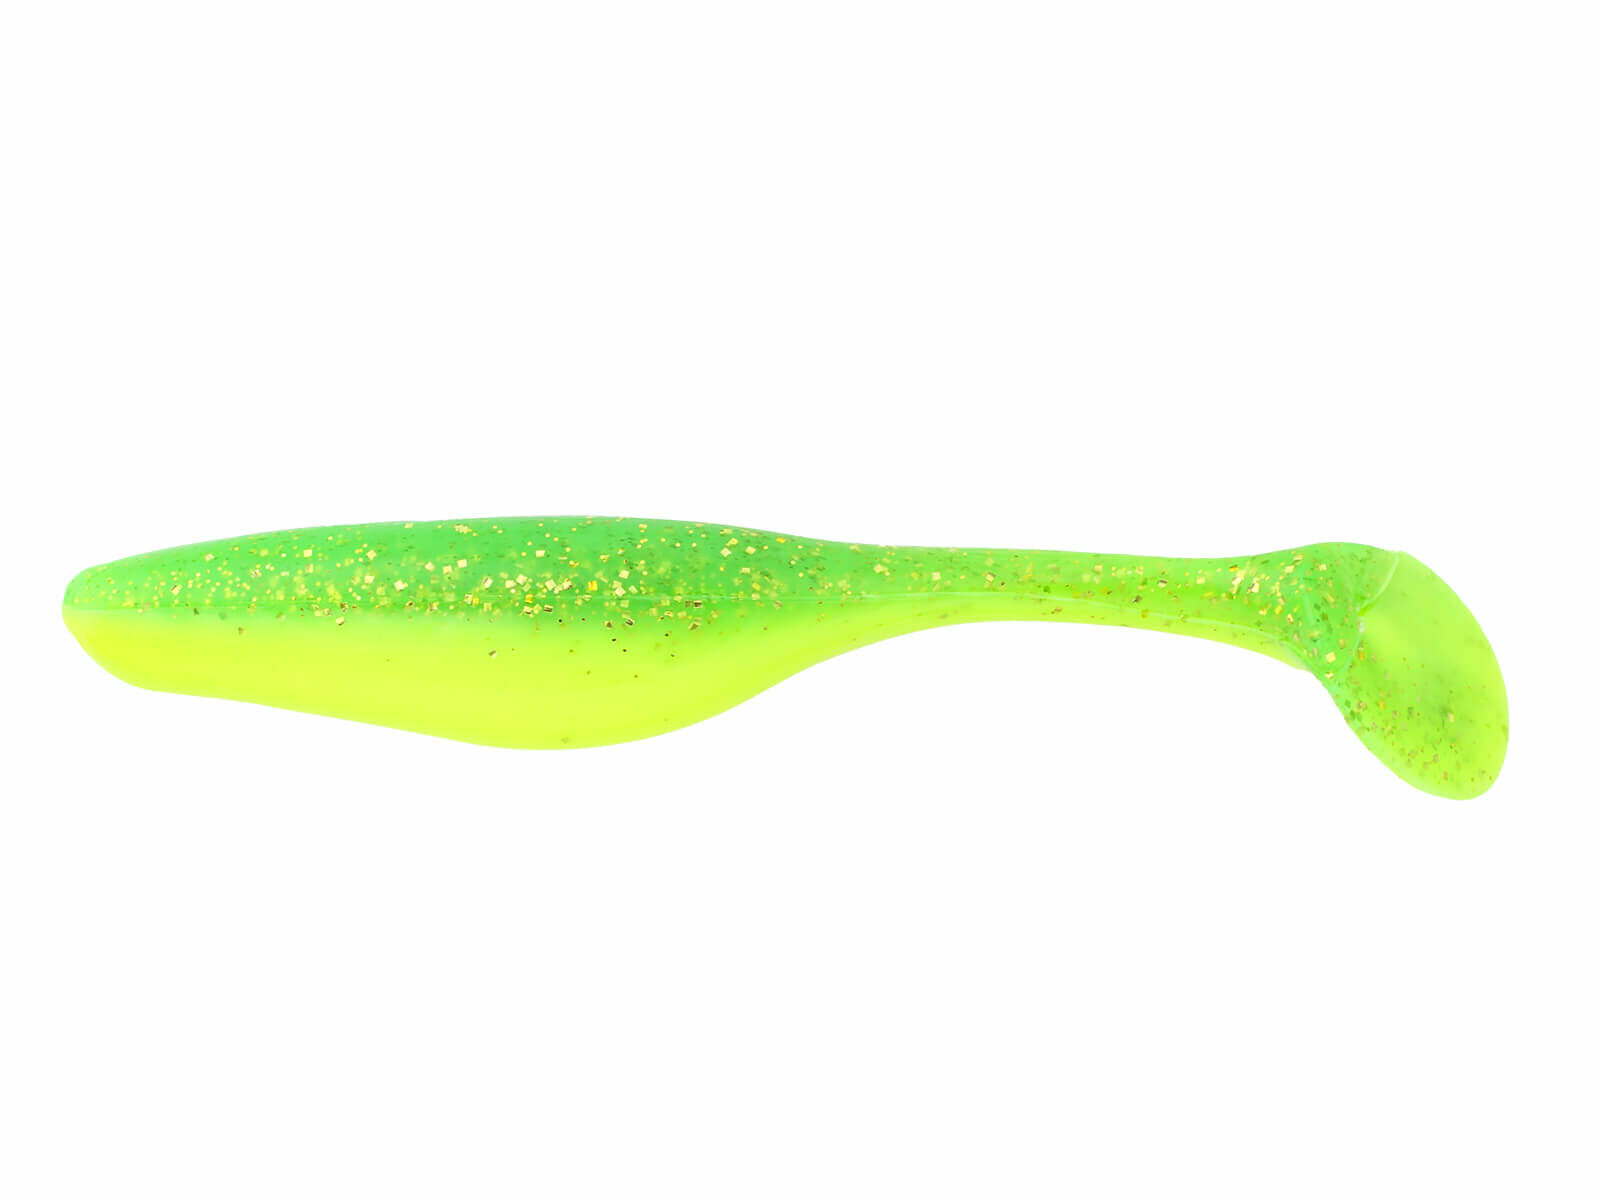 6" Sea Shad - Green Mackerel